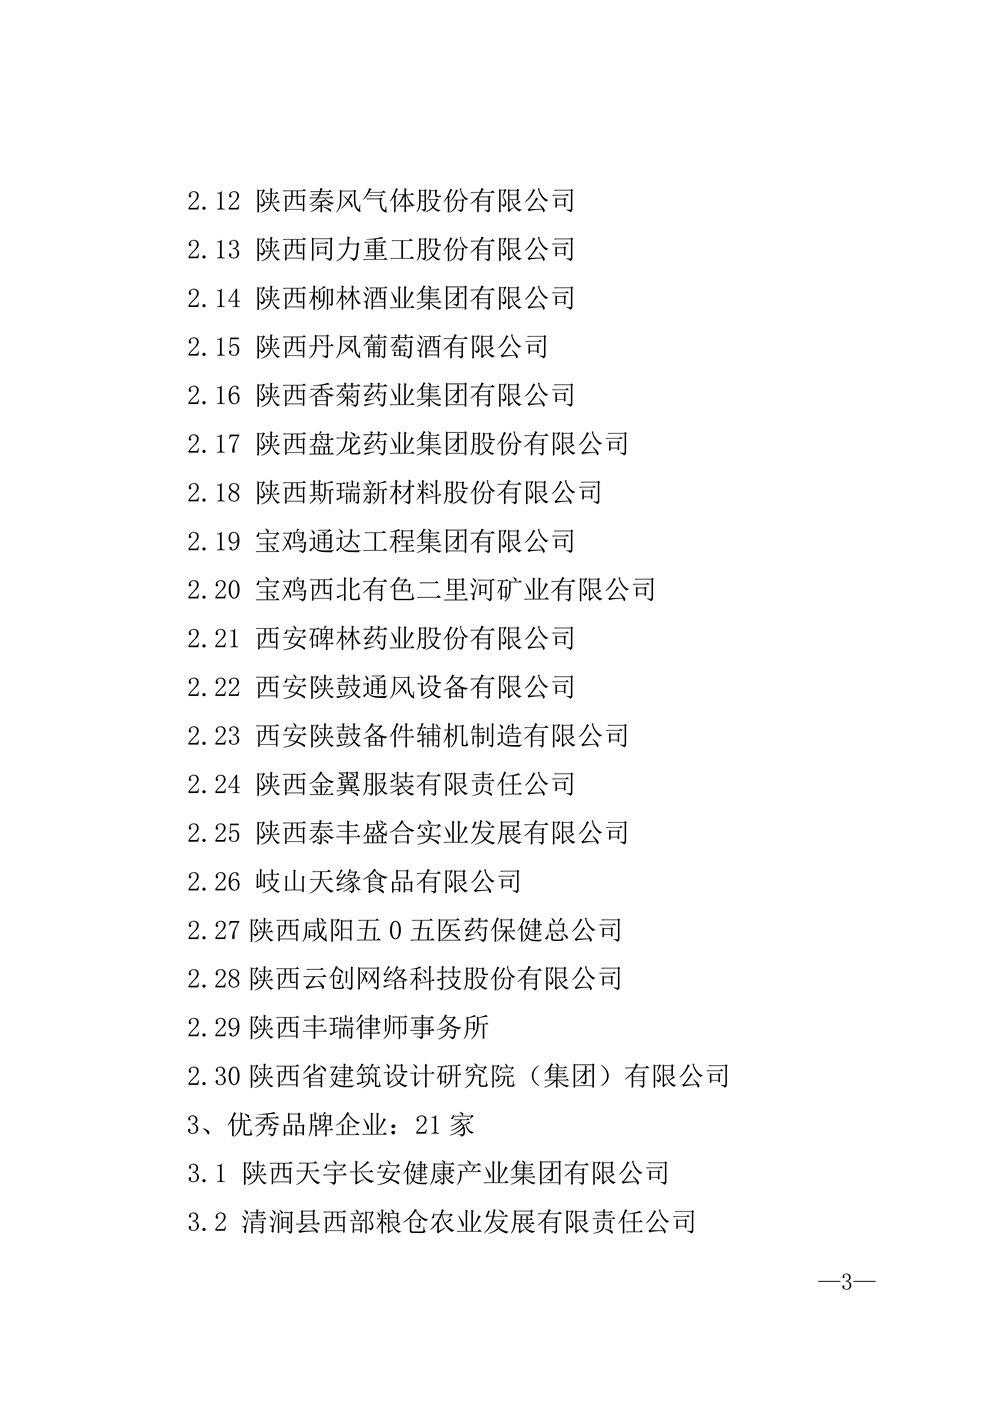 22-52陕西省2021年度品牌评选公示通知_页面_03.jpg